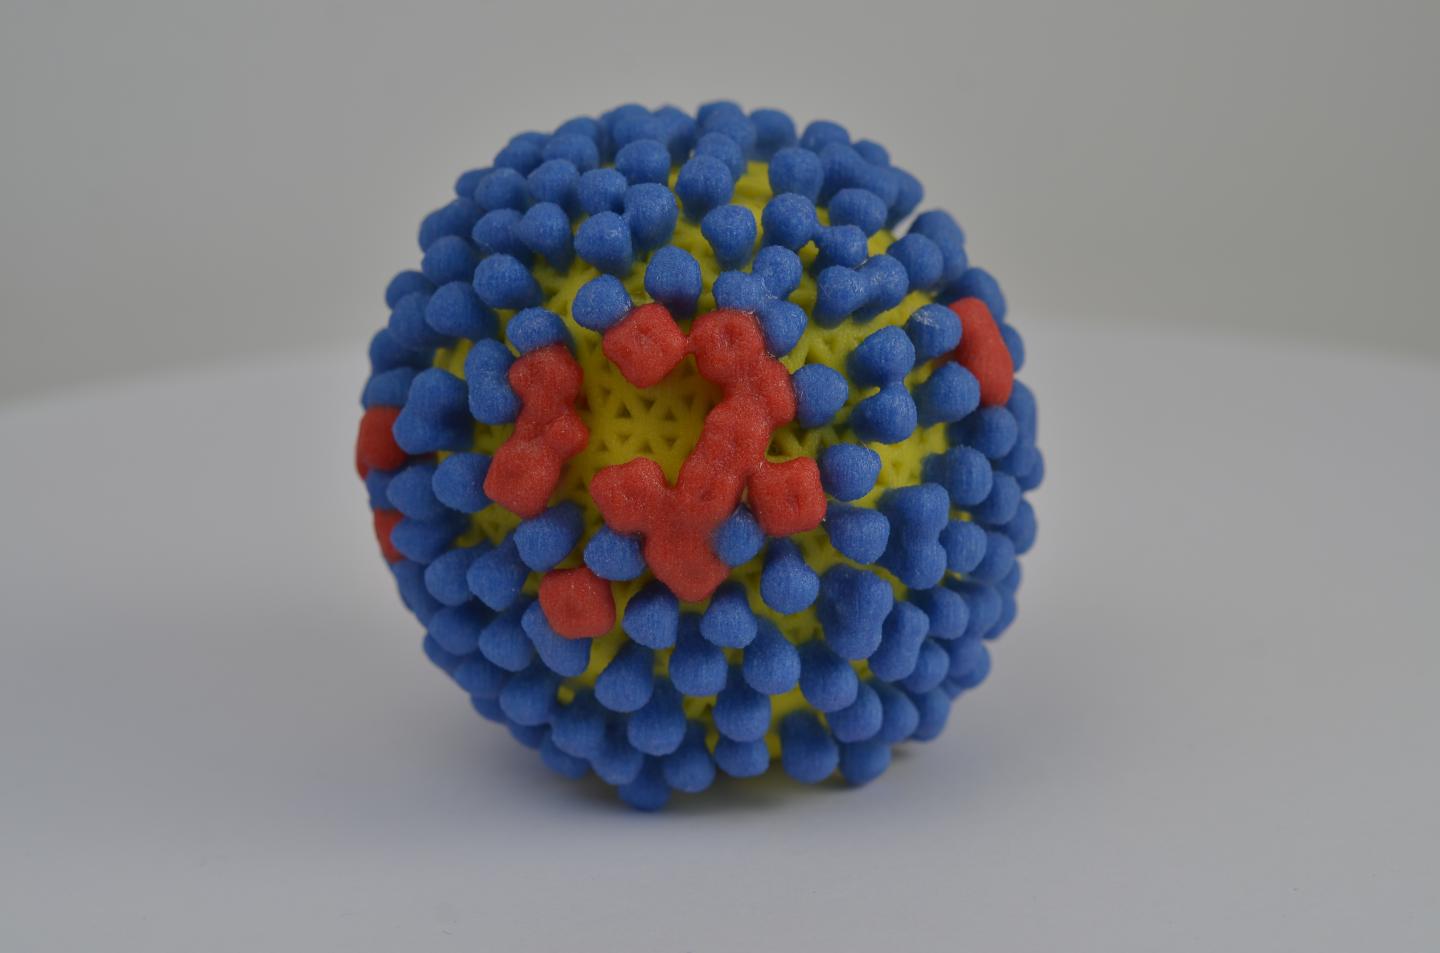 Model of a Flu Virus